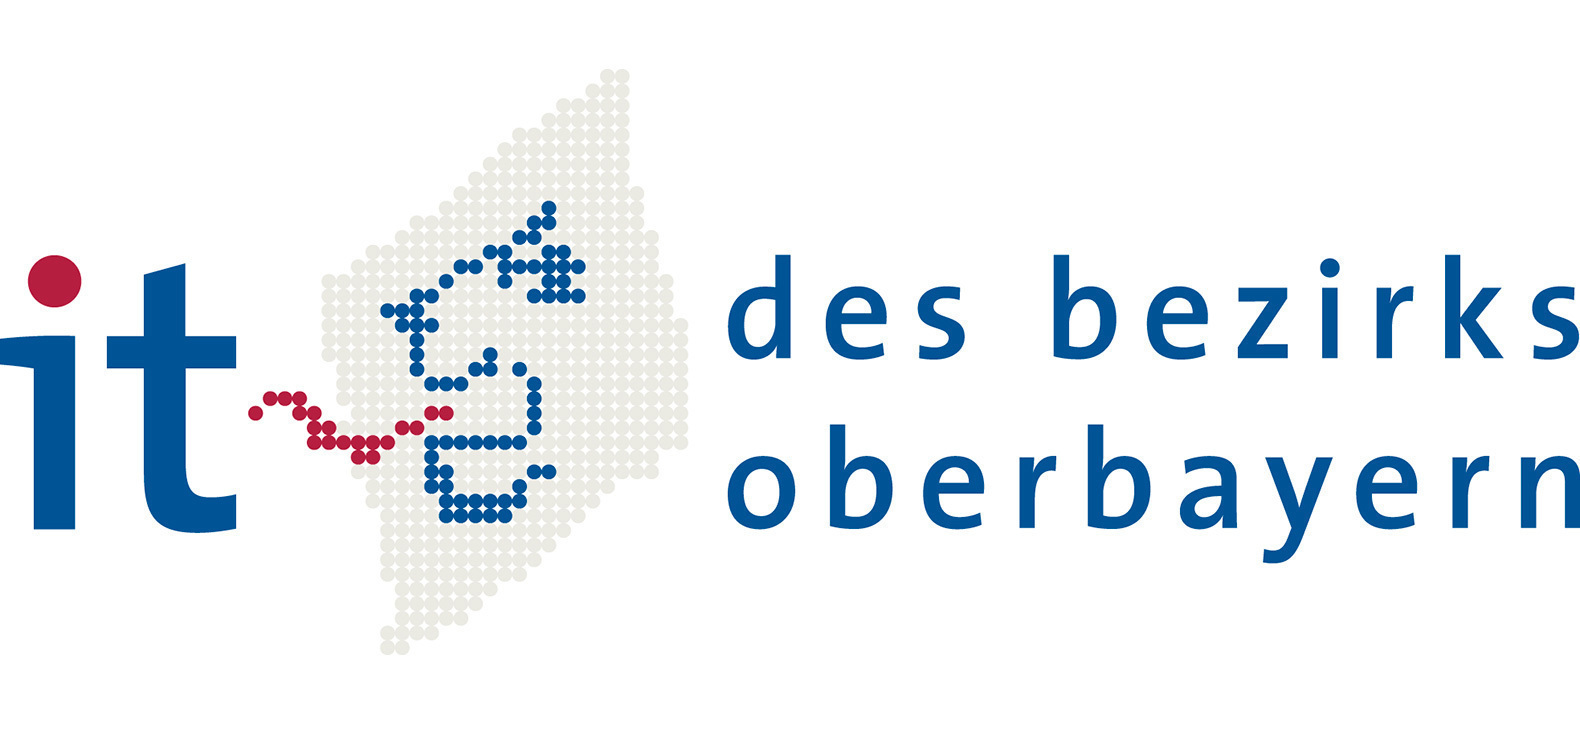 Der stilisierte Löwenkopf des Bezirks Oberbayern wir hier als Pixelkunst dargestellt, umrahmt von den Worten "it des bezirks oberbayern"